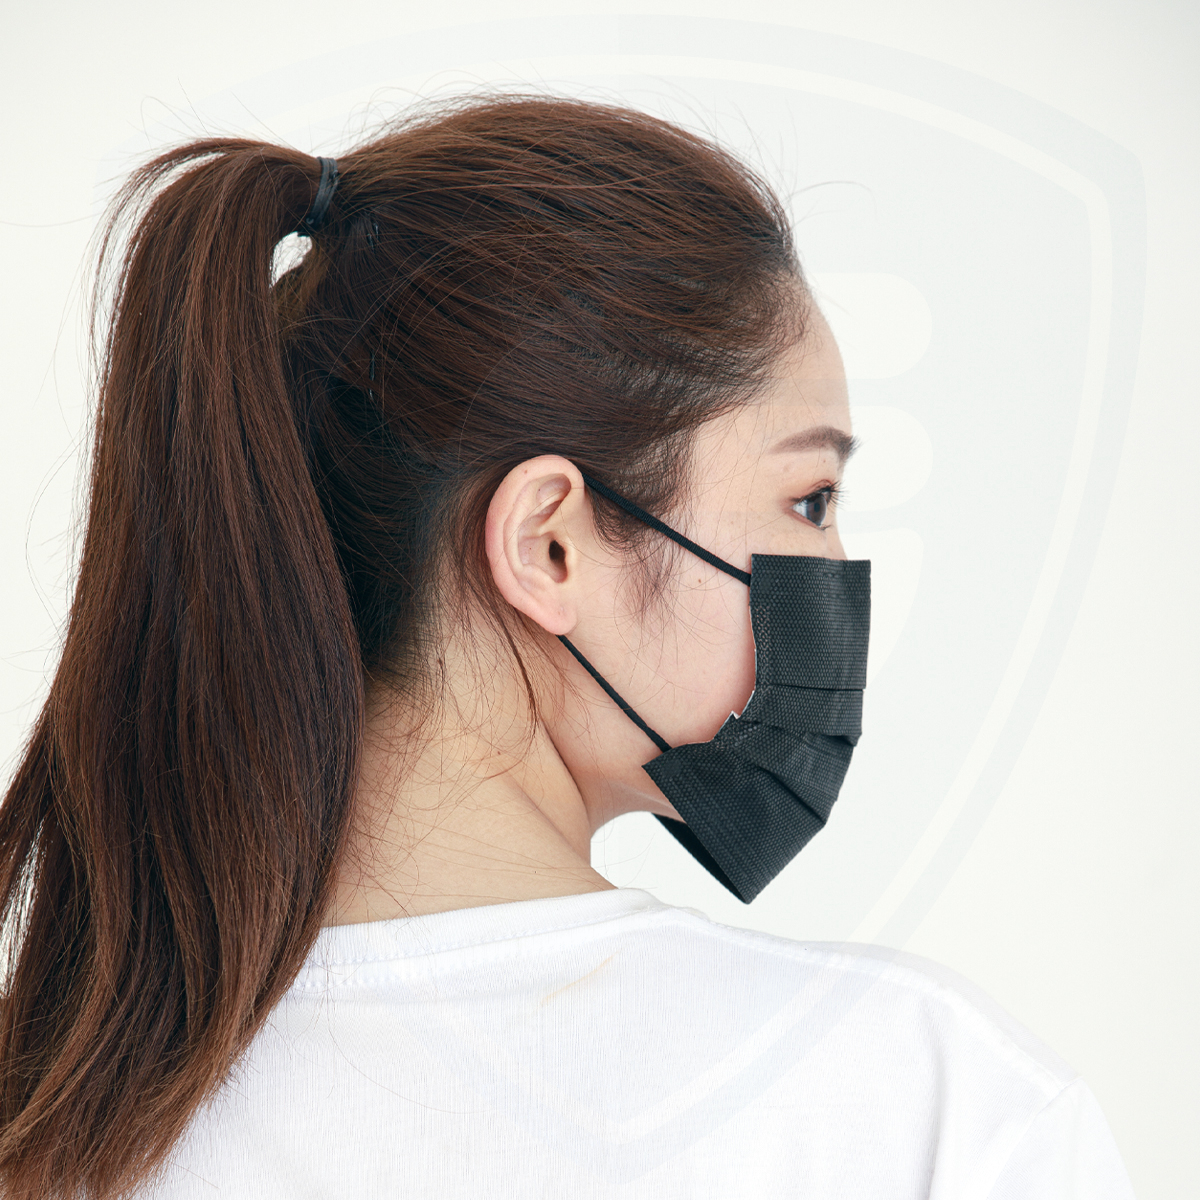 Masque facial jetable respirant réglable confortable de 3 couches noir